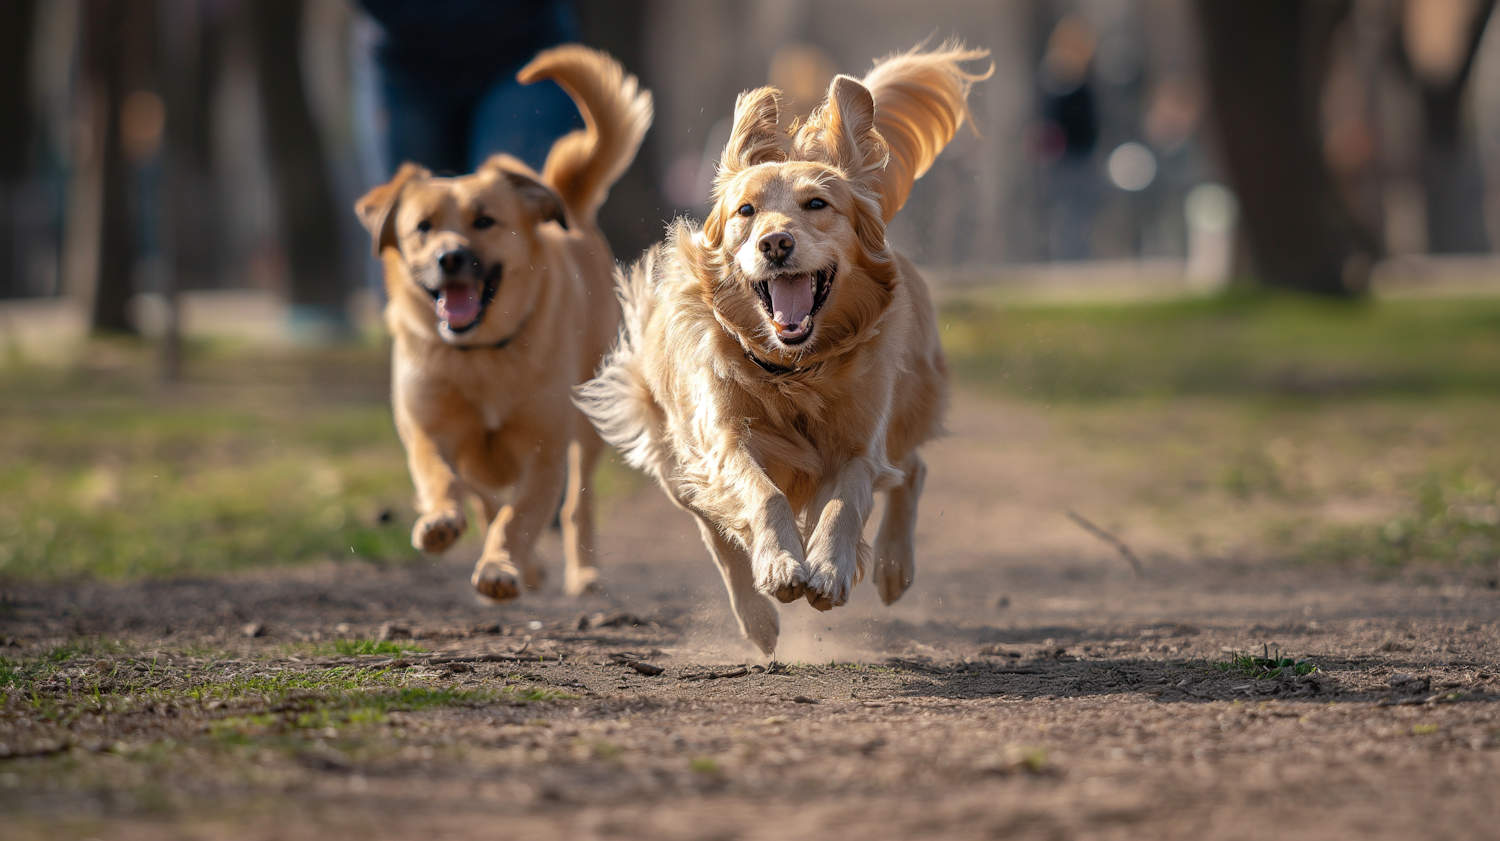 Joyful Dogs in Sprint